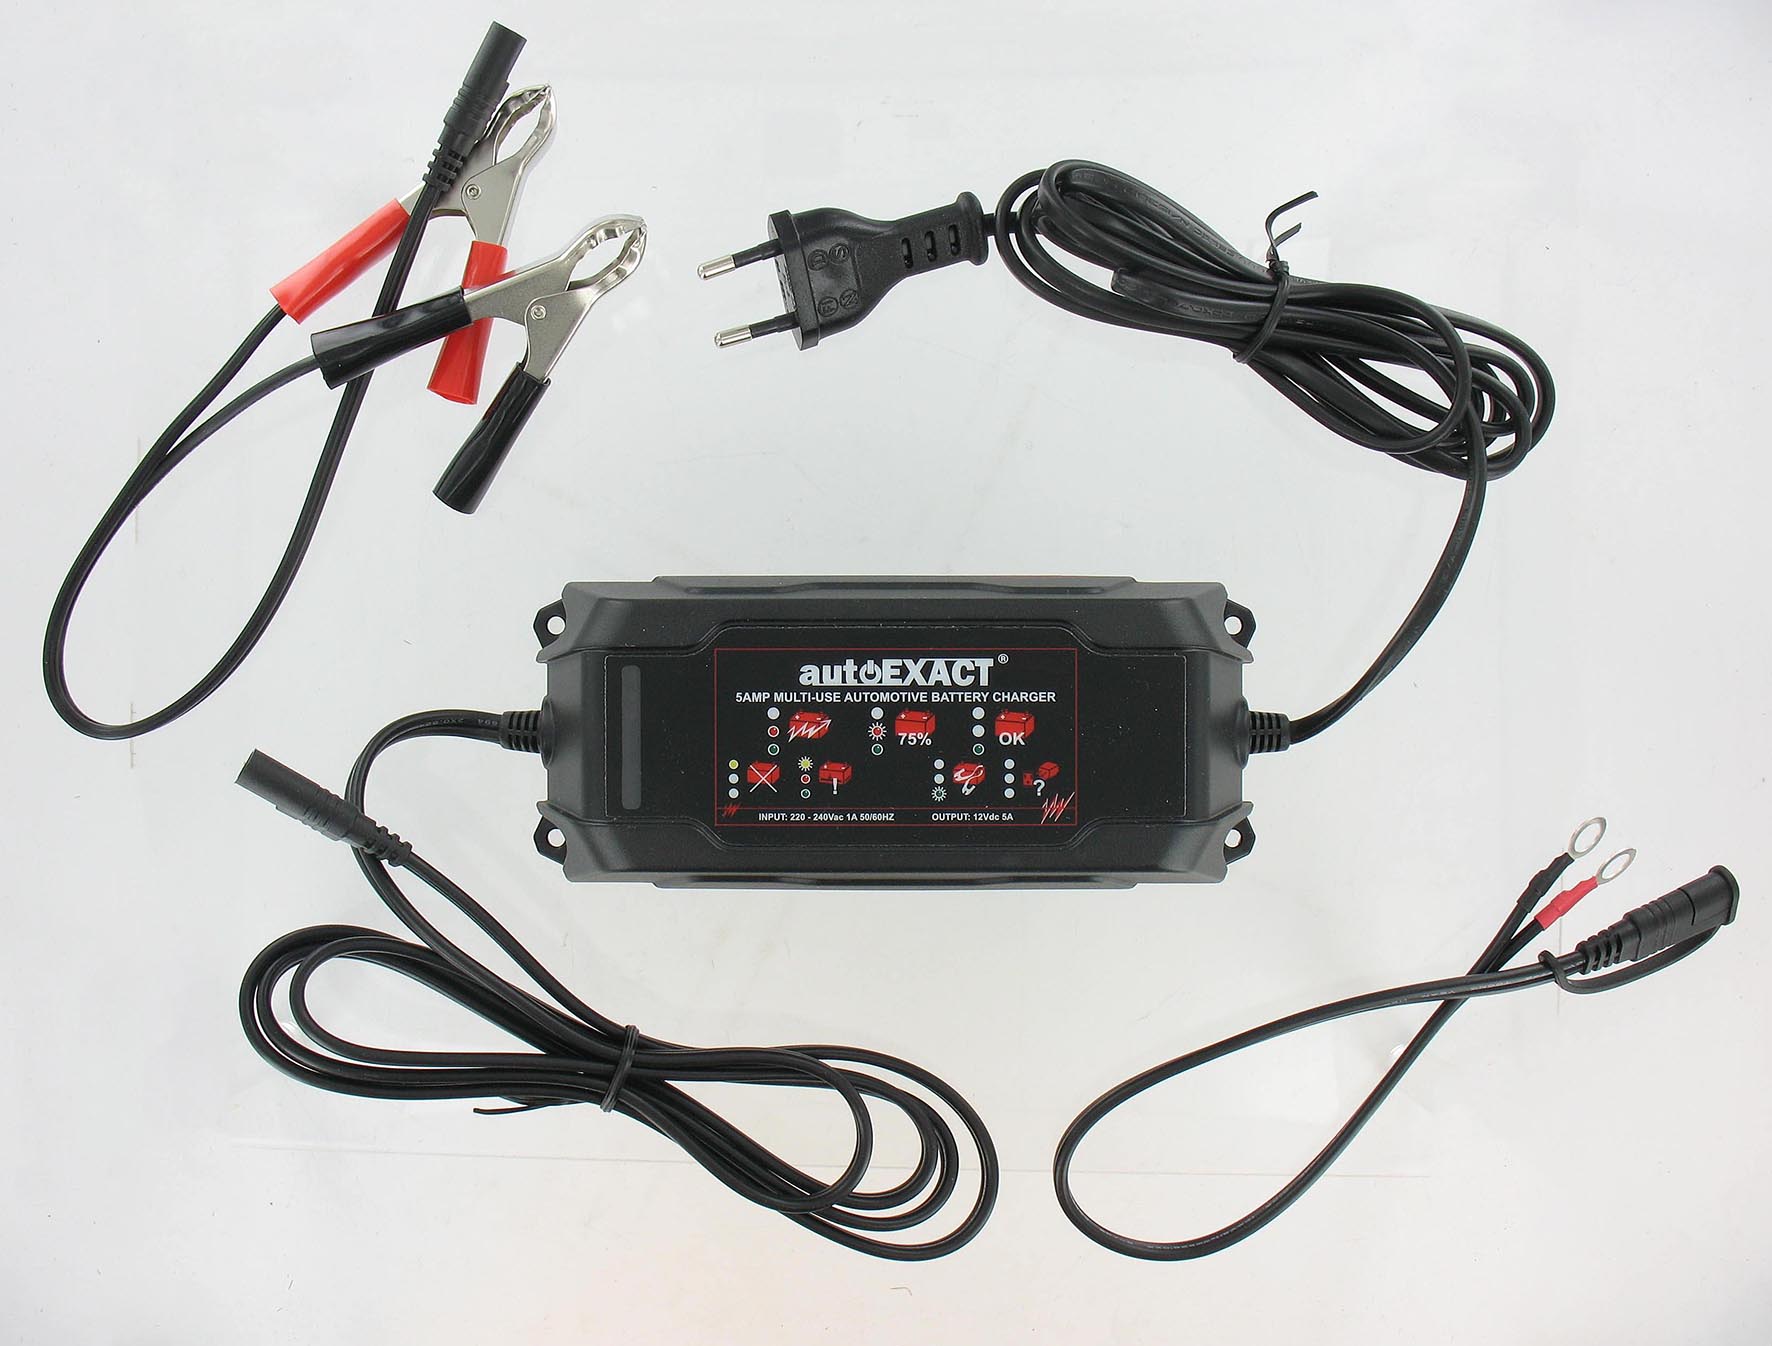 Chargeur et maintien de batterie 220-240v - 5 amp